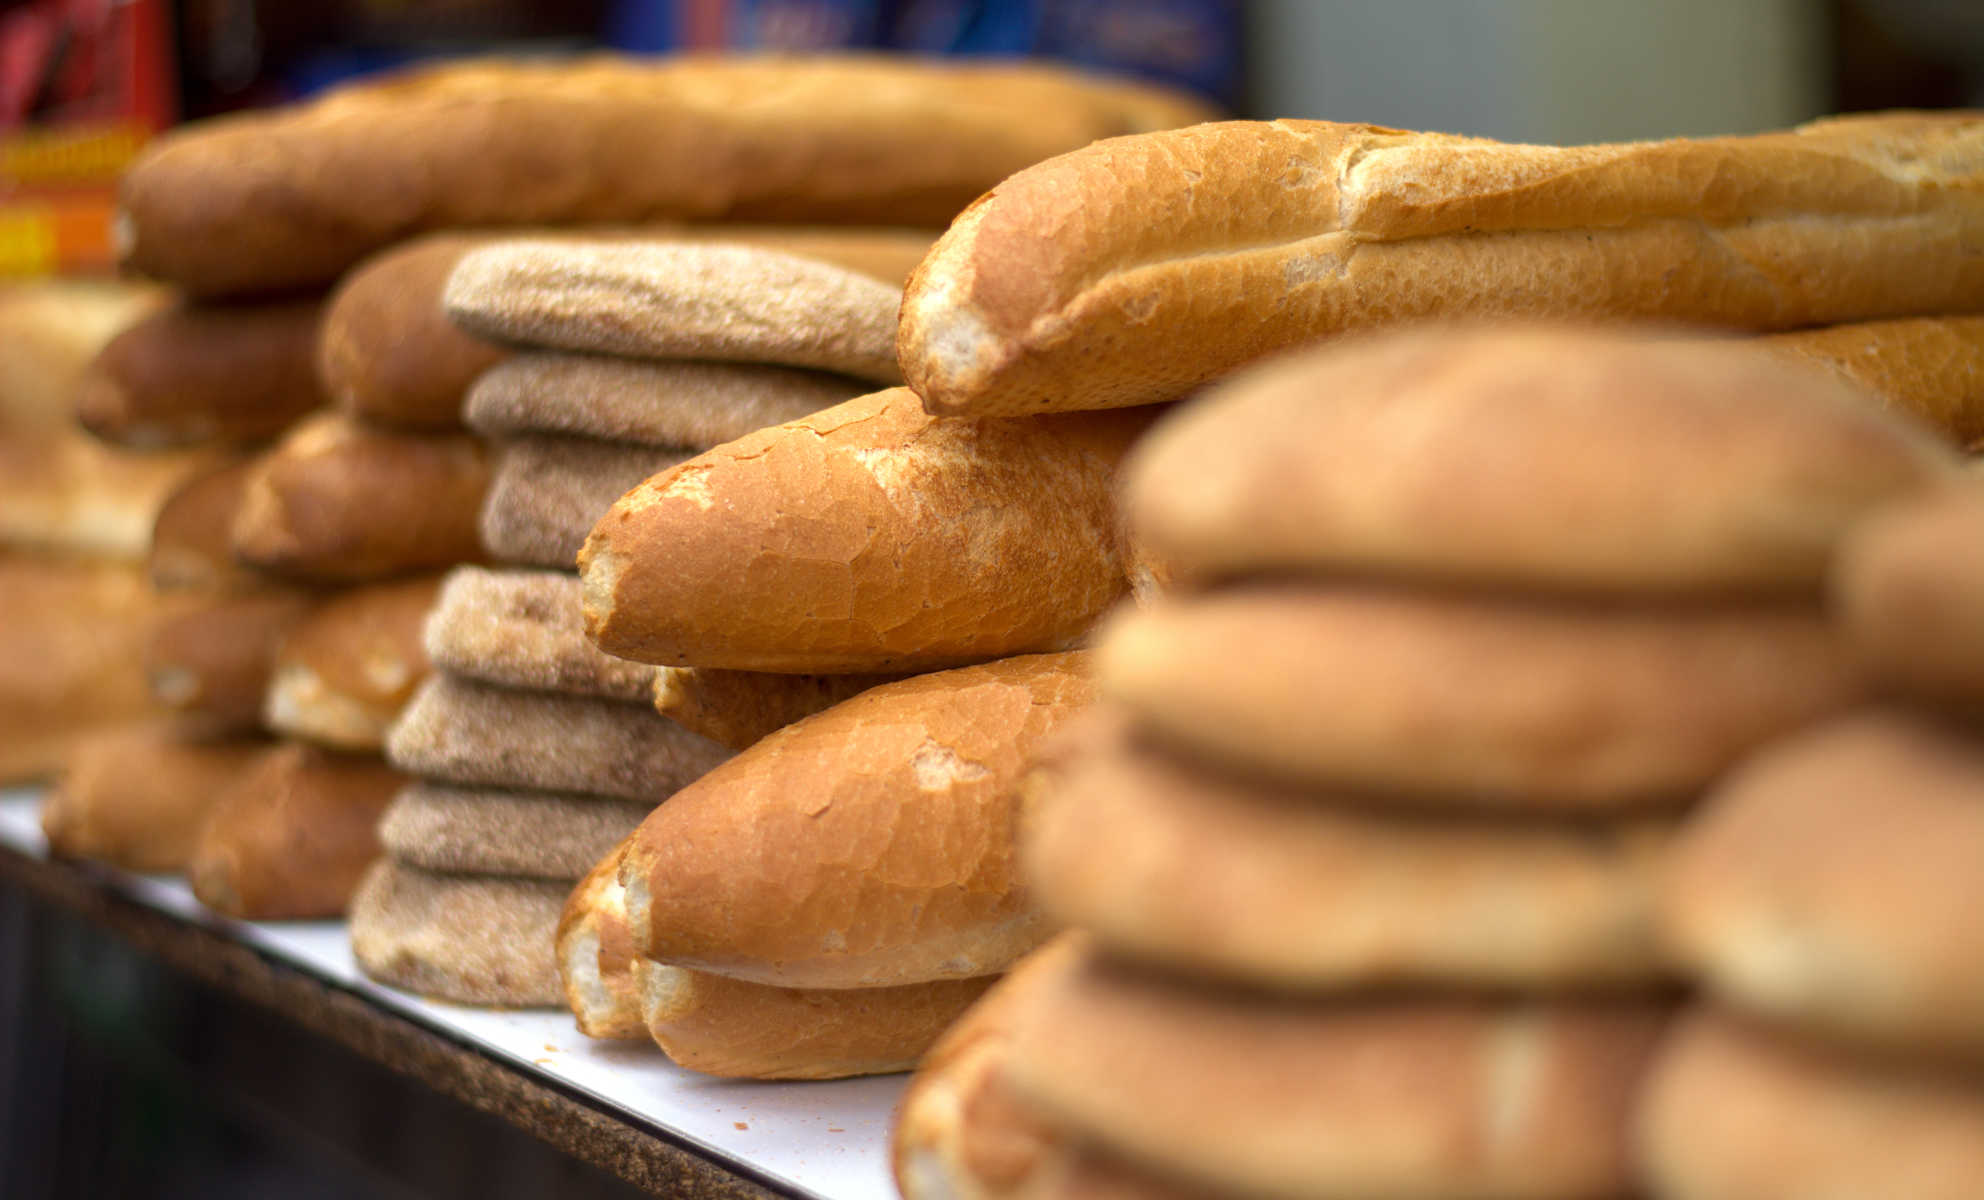 جامعة حقوق المستهلك :” الخبز الذي يأكله المغاربة يحتوي على مواد تتسبب في عدة أمراض منها السرطان ويجب مراقبته من طرف السلطات”